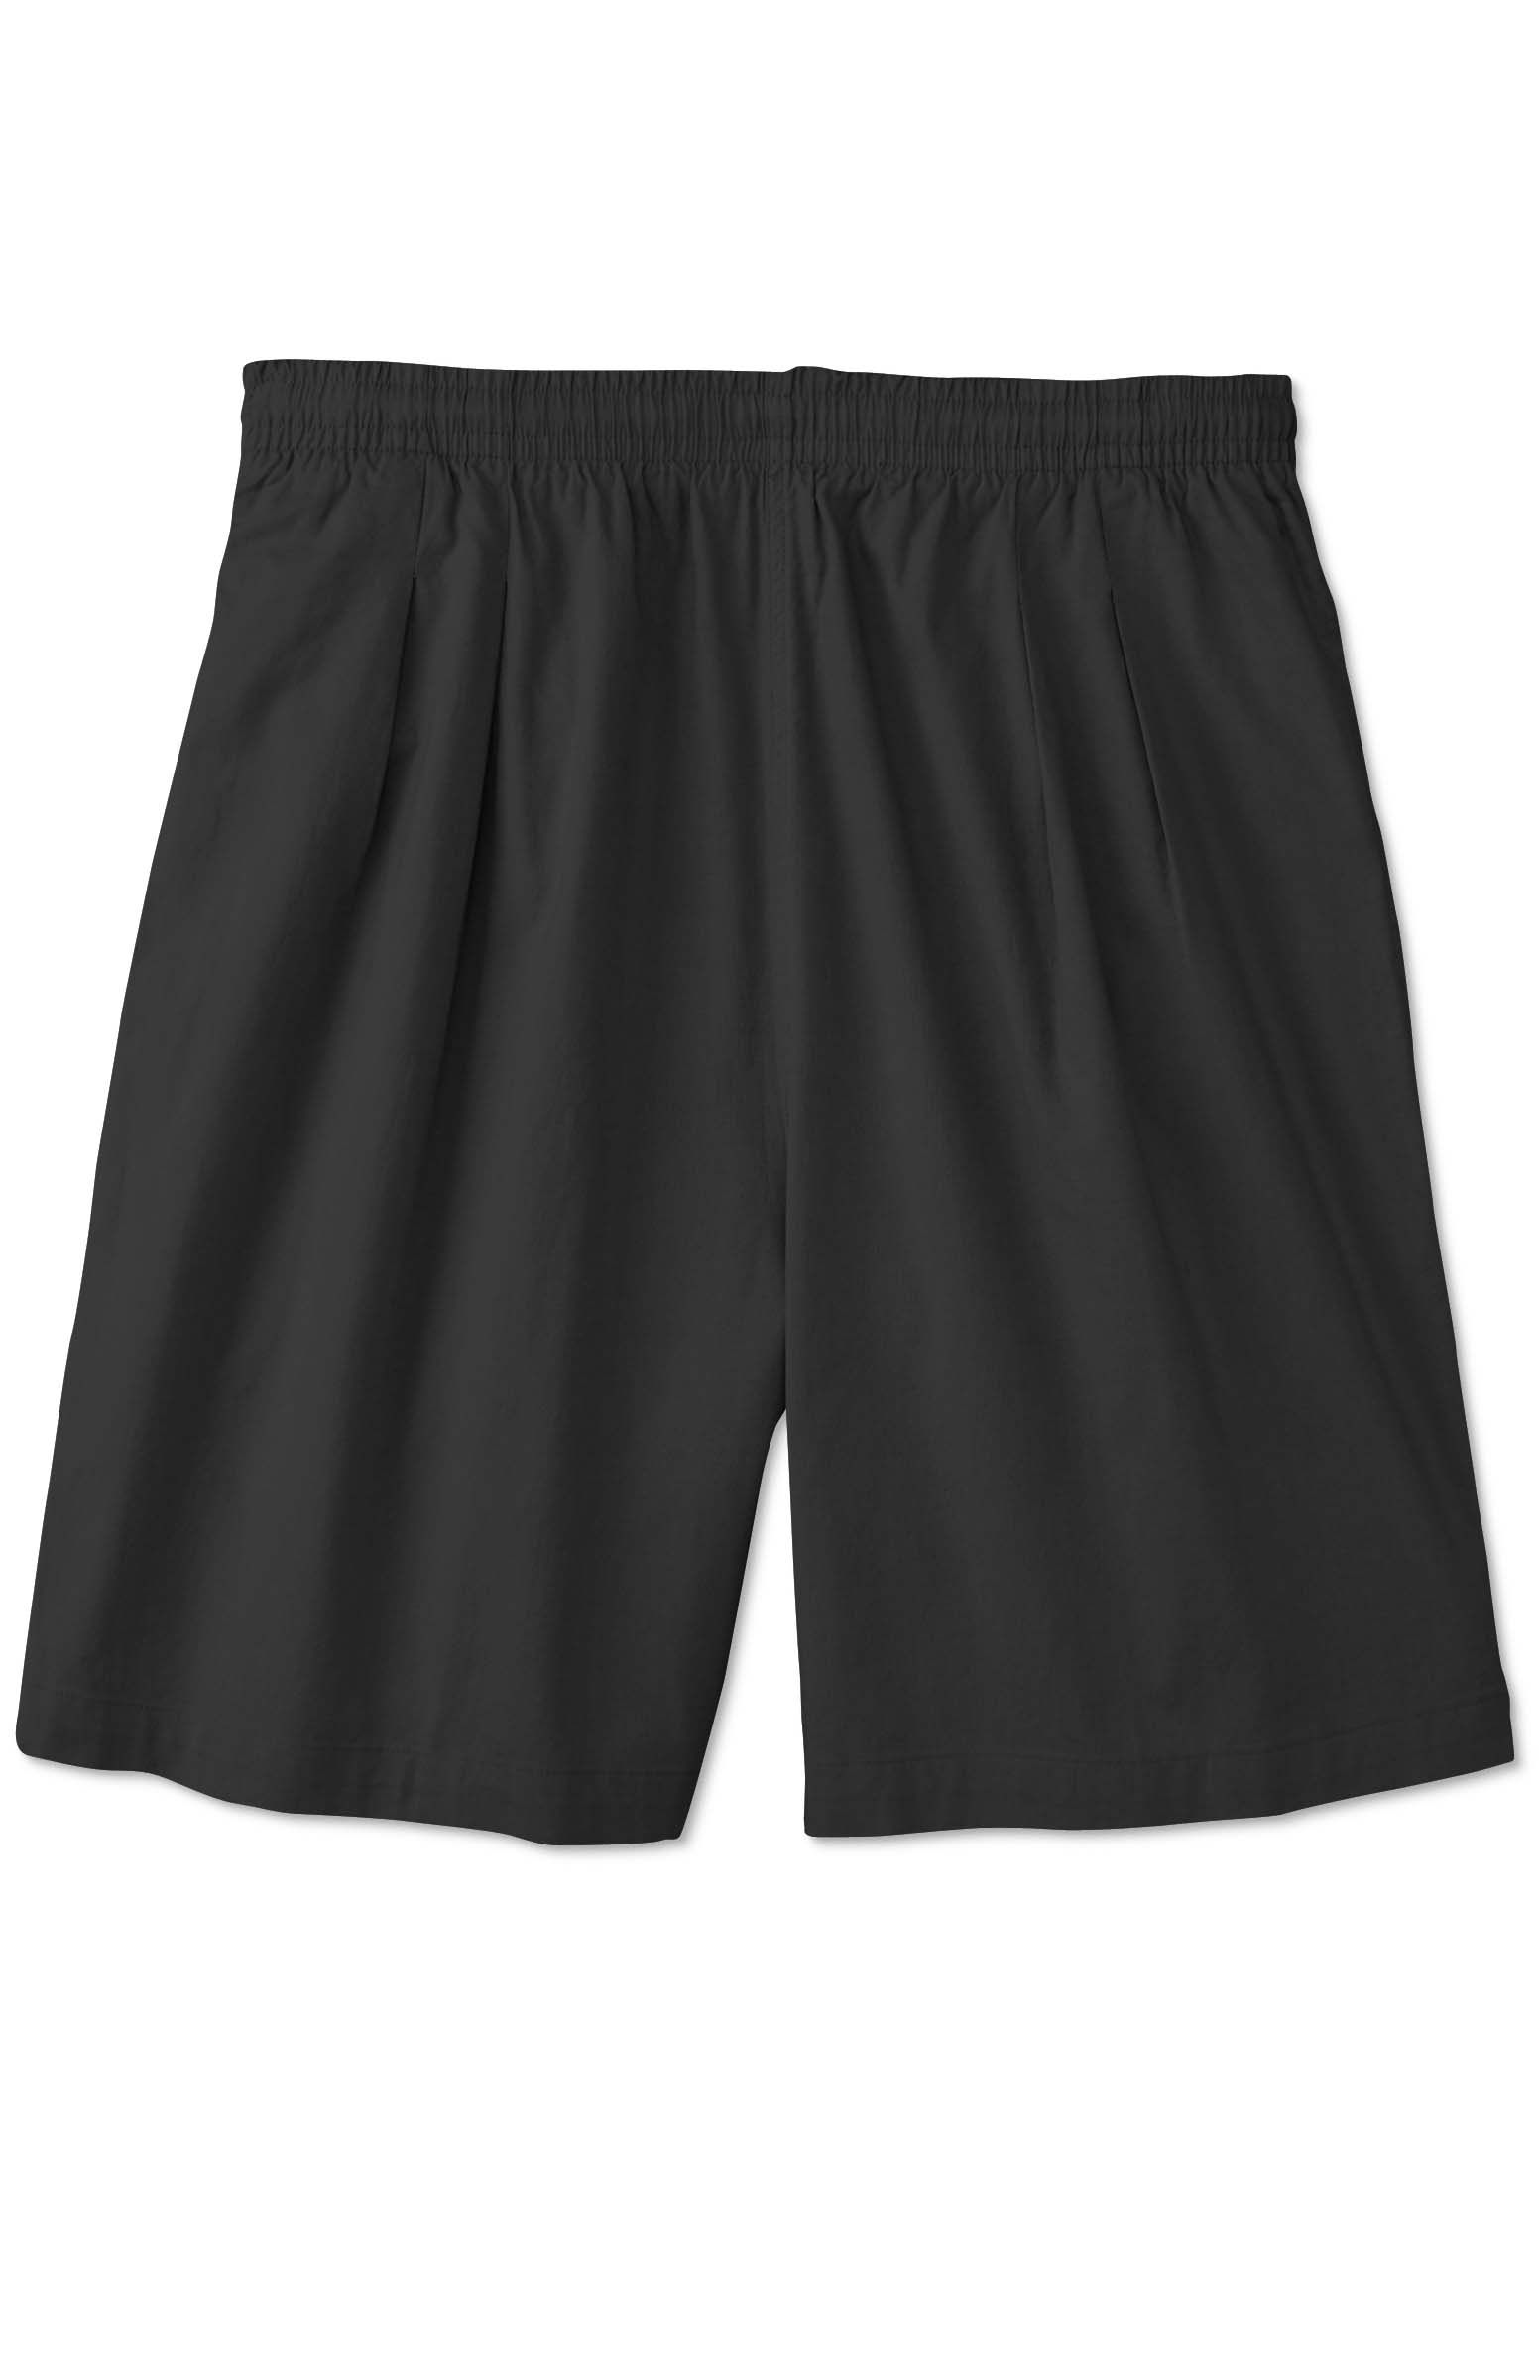 Harbor Bay Men's Beach Shorts